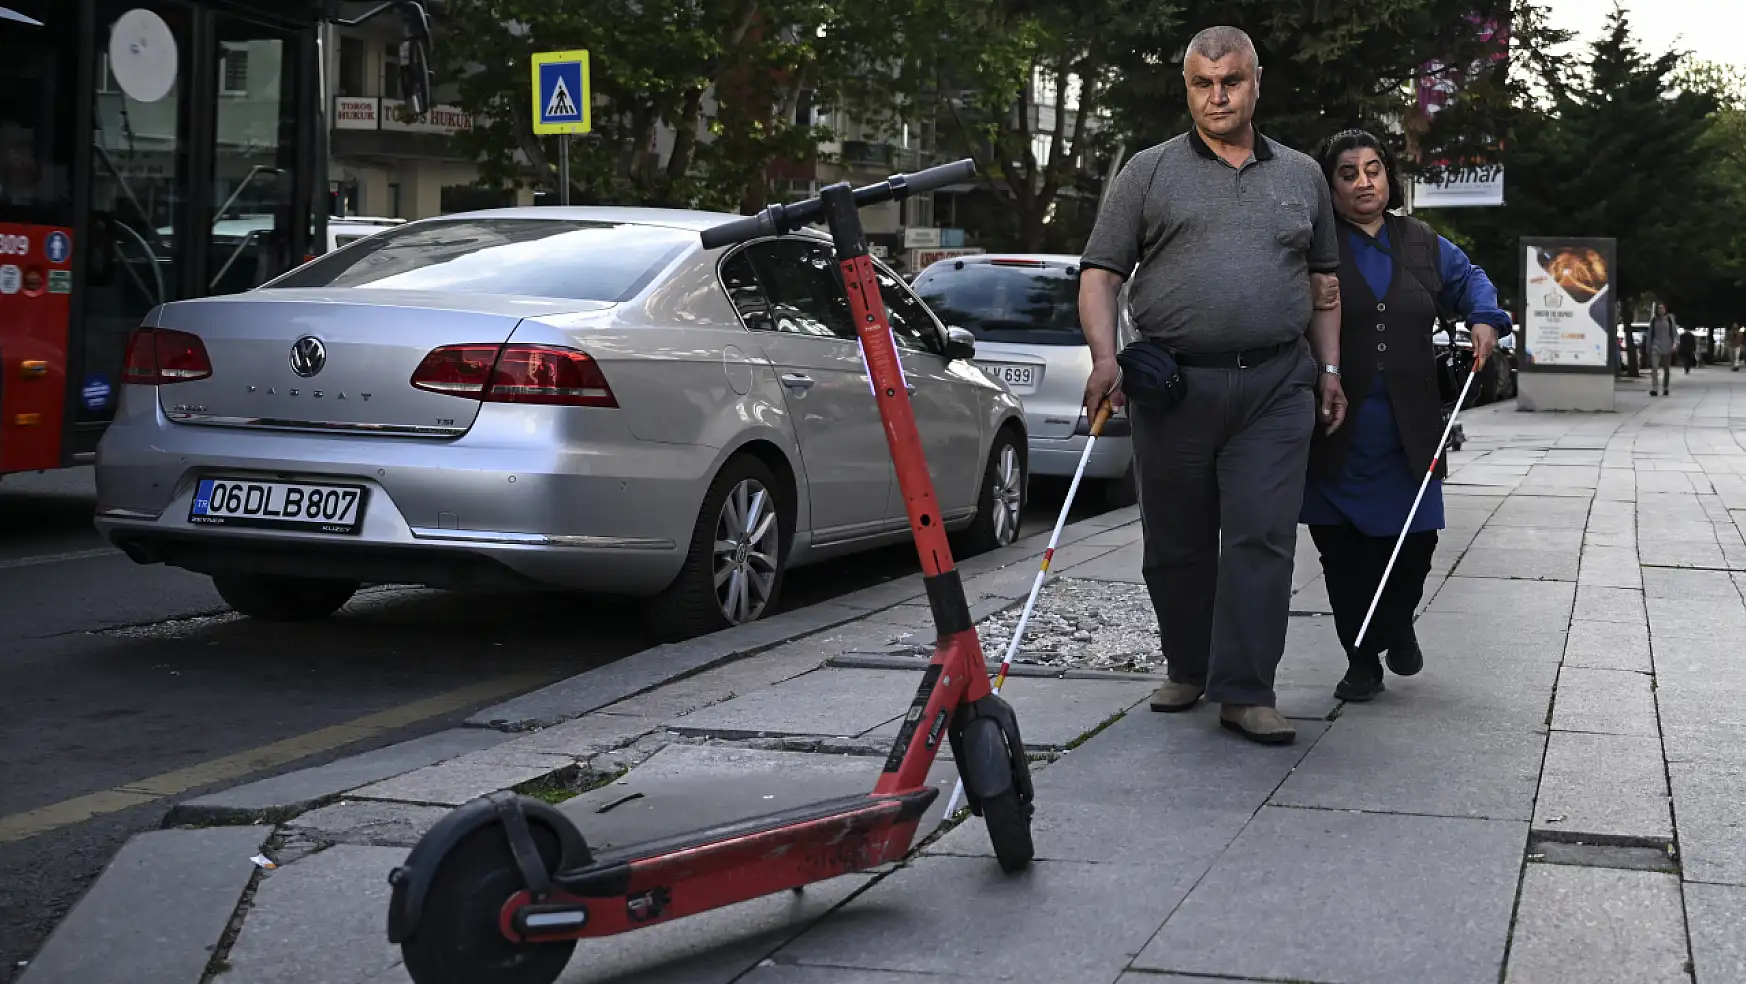 Görme engelliler, şehirlerde yaşamı kolaylaştıracak tedbirlerin alınmasını istiyor